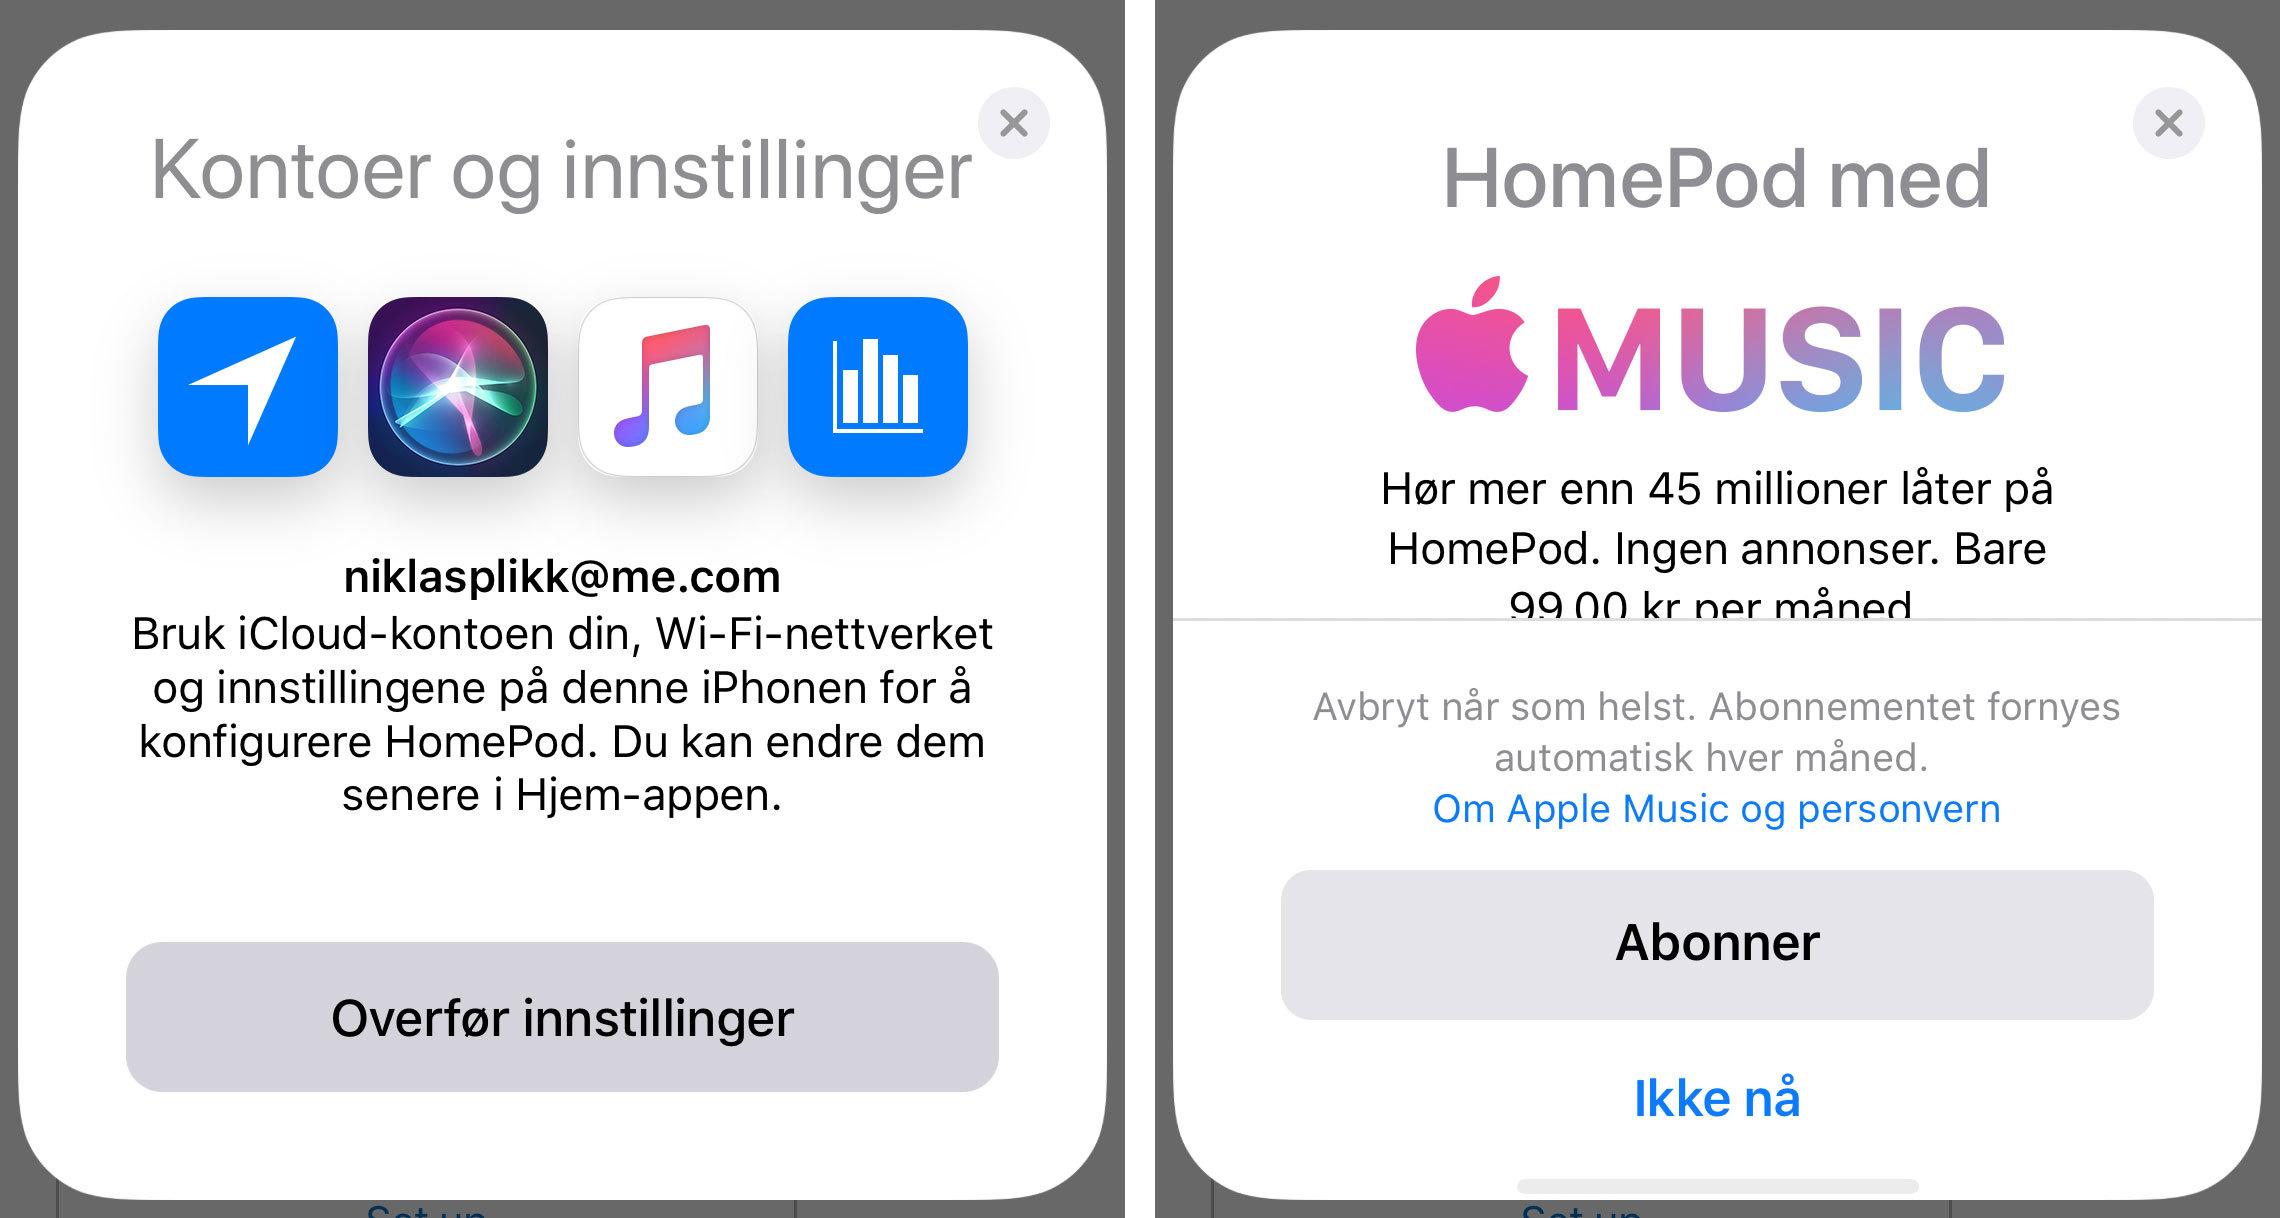 Hvis du ikke abonnerer på Apple Music blir du raskt pushet til å gjøre det når du setter opp HomePod for første gang.